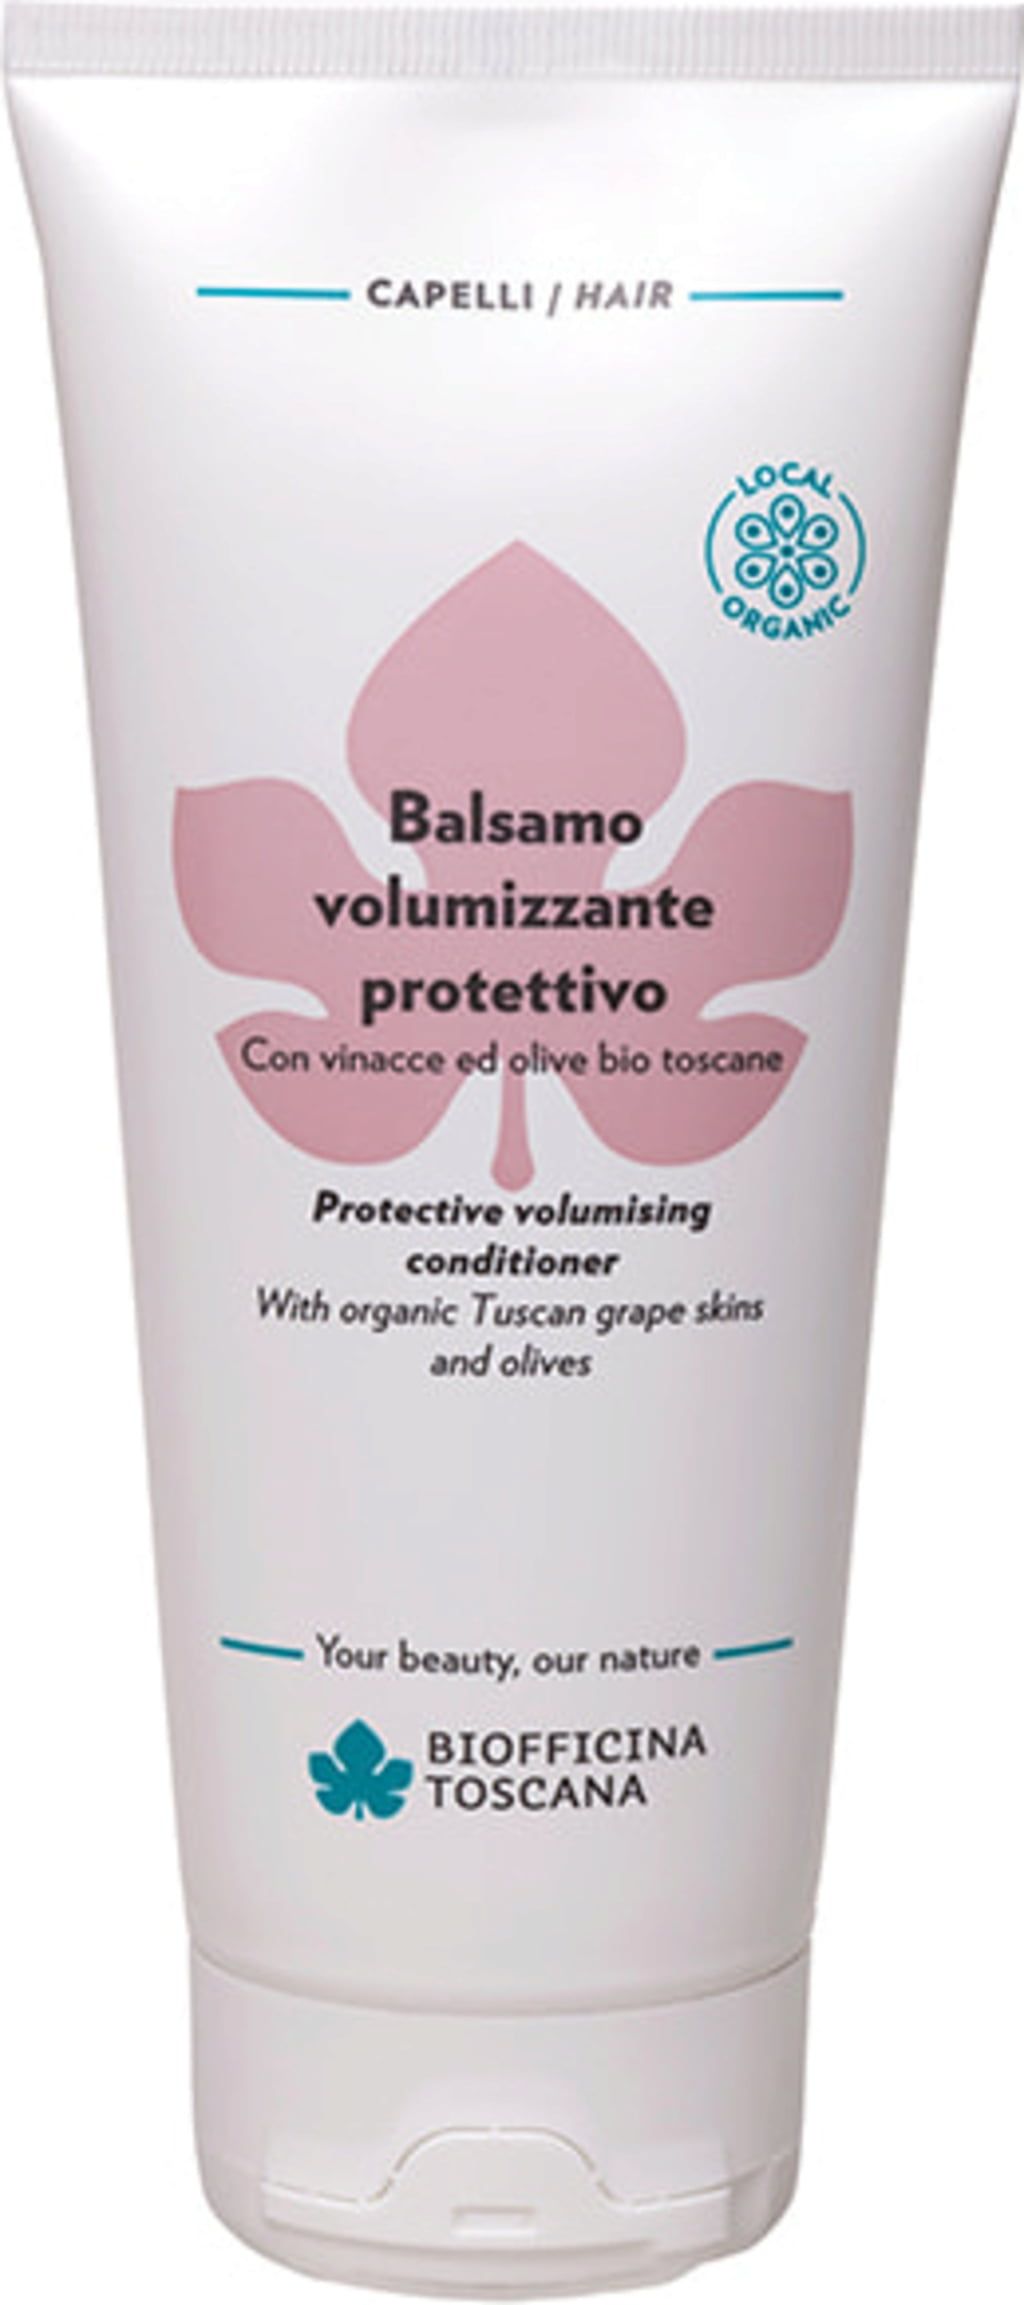 Biofficina Toscana Balsamo Volumizzante Protettivo - 200 ml